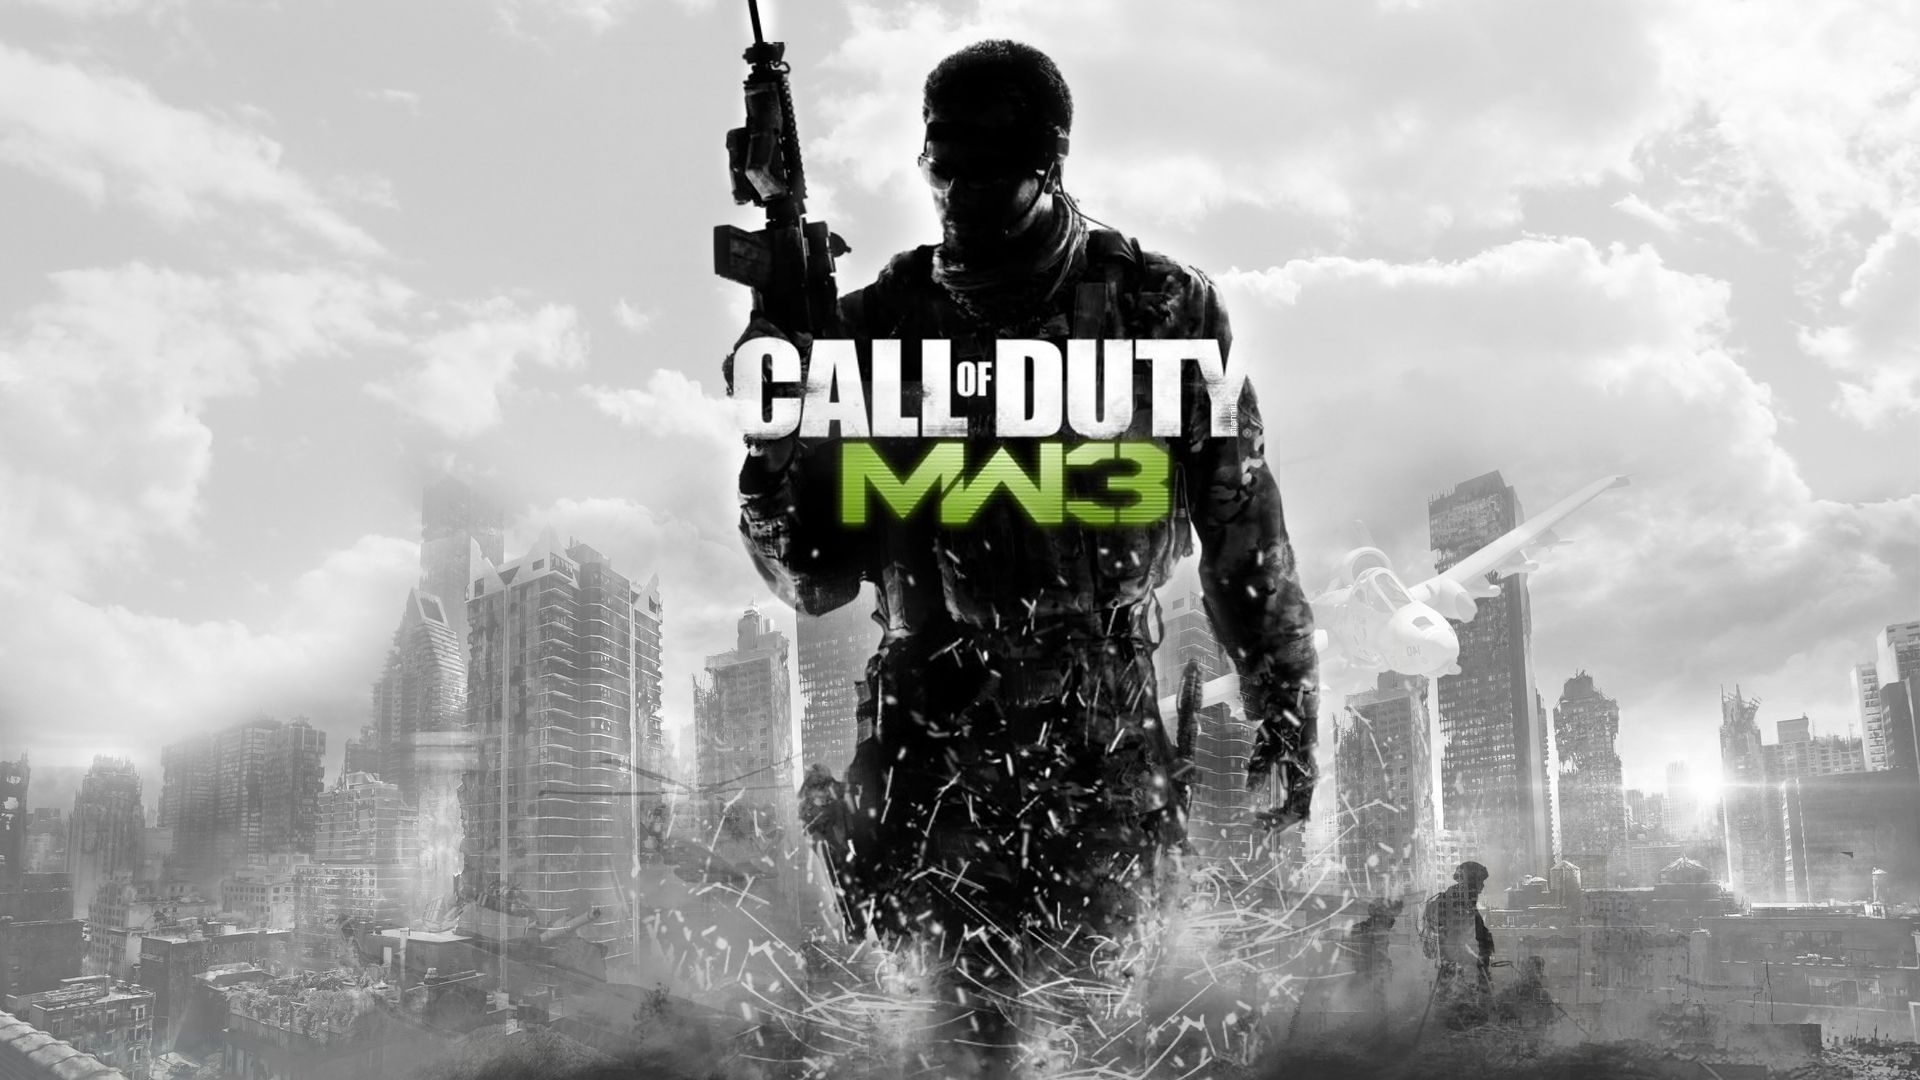 Melhores papéis de parede de Call Of Duty: Modern Warfare 3 para tela do telefone